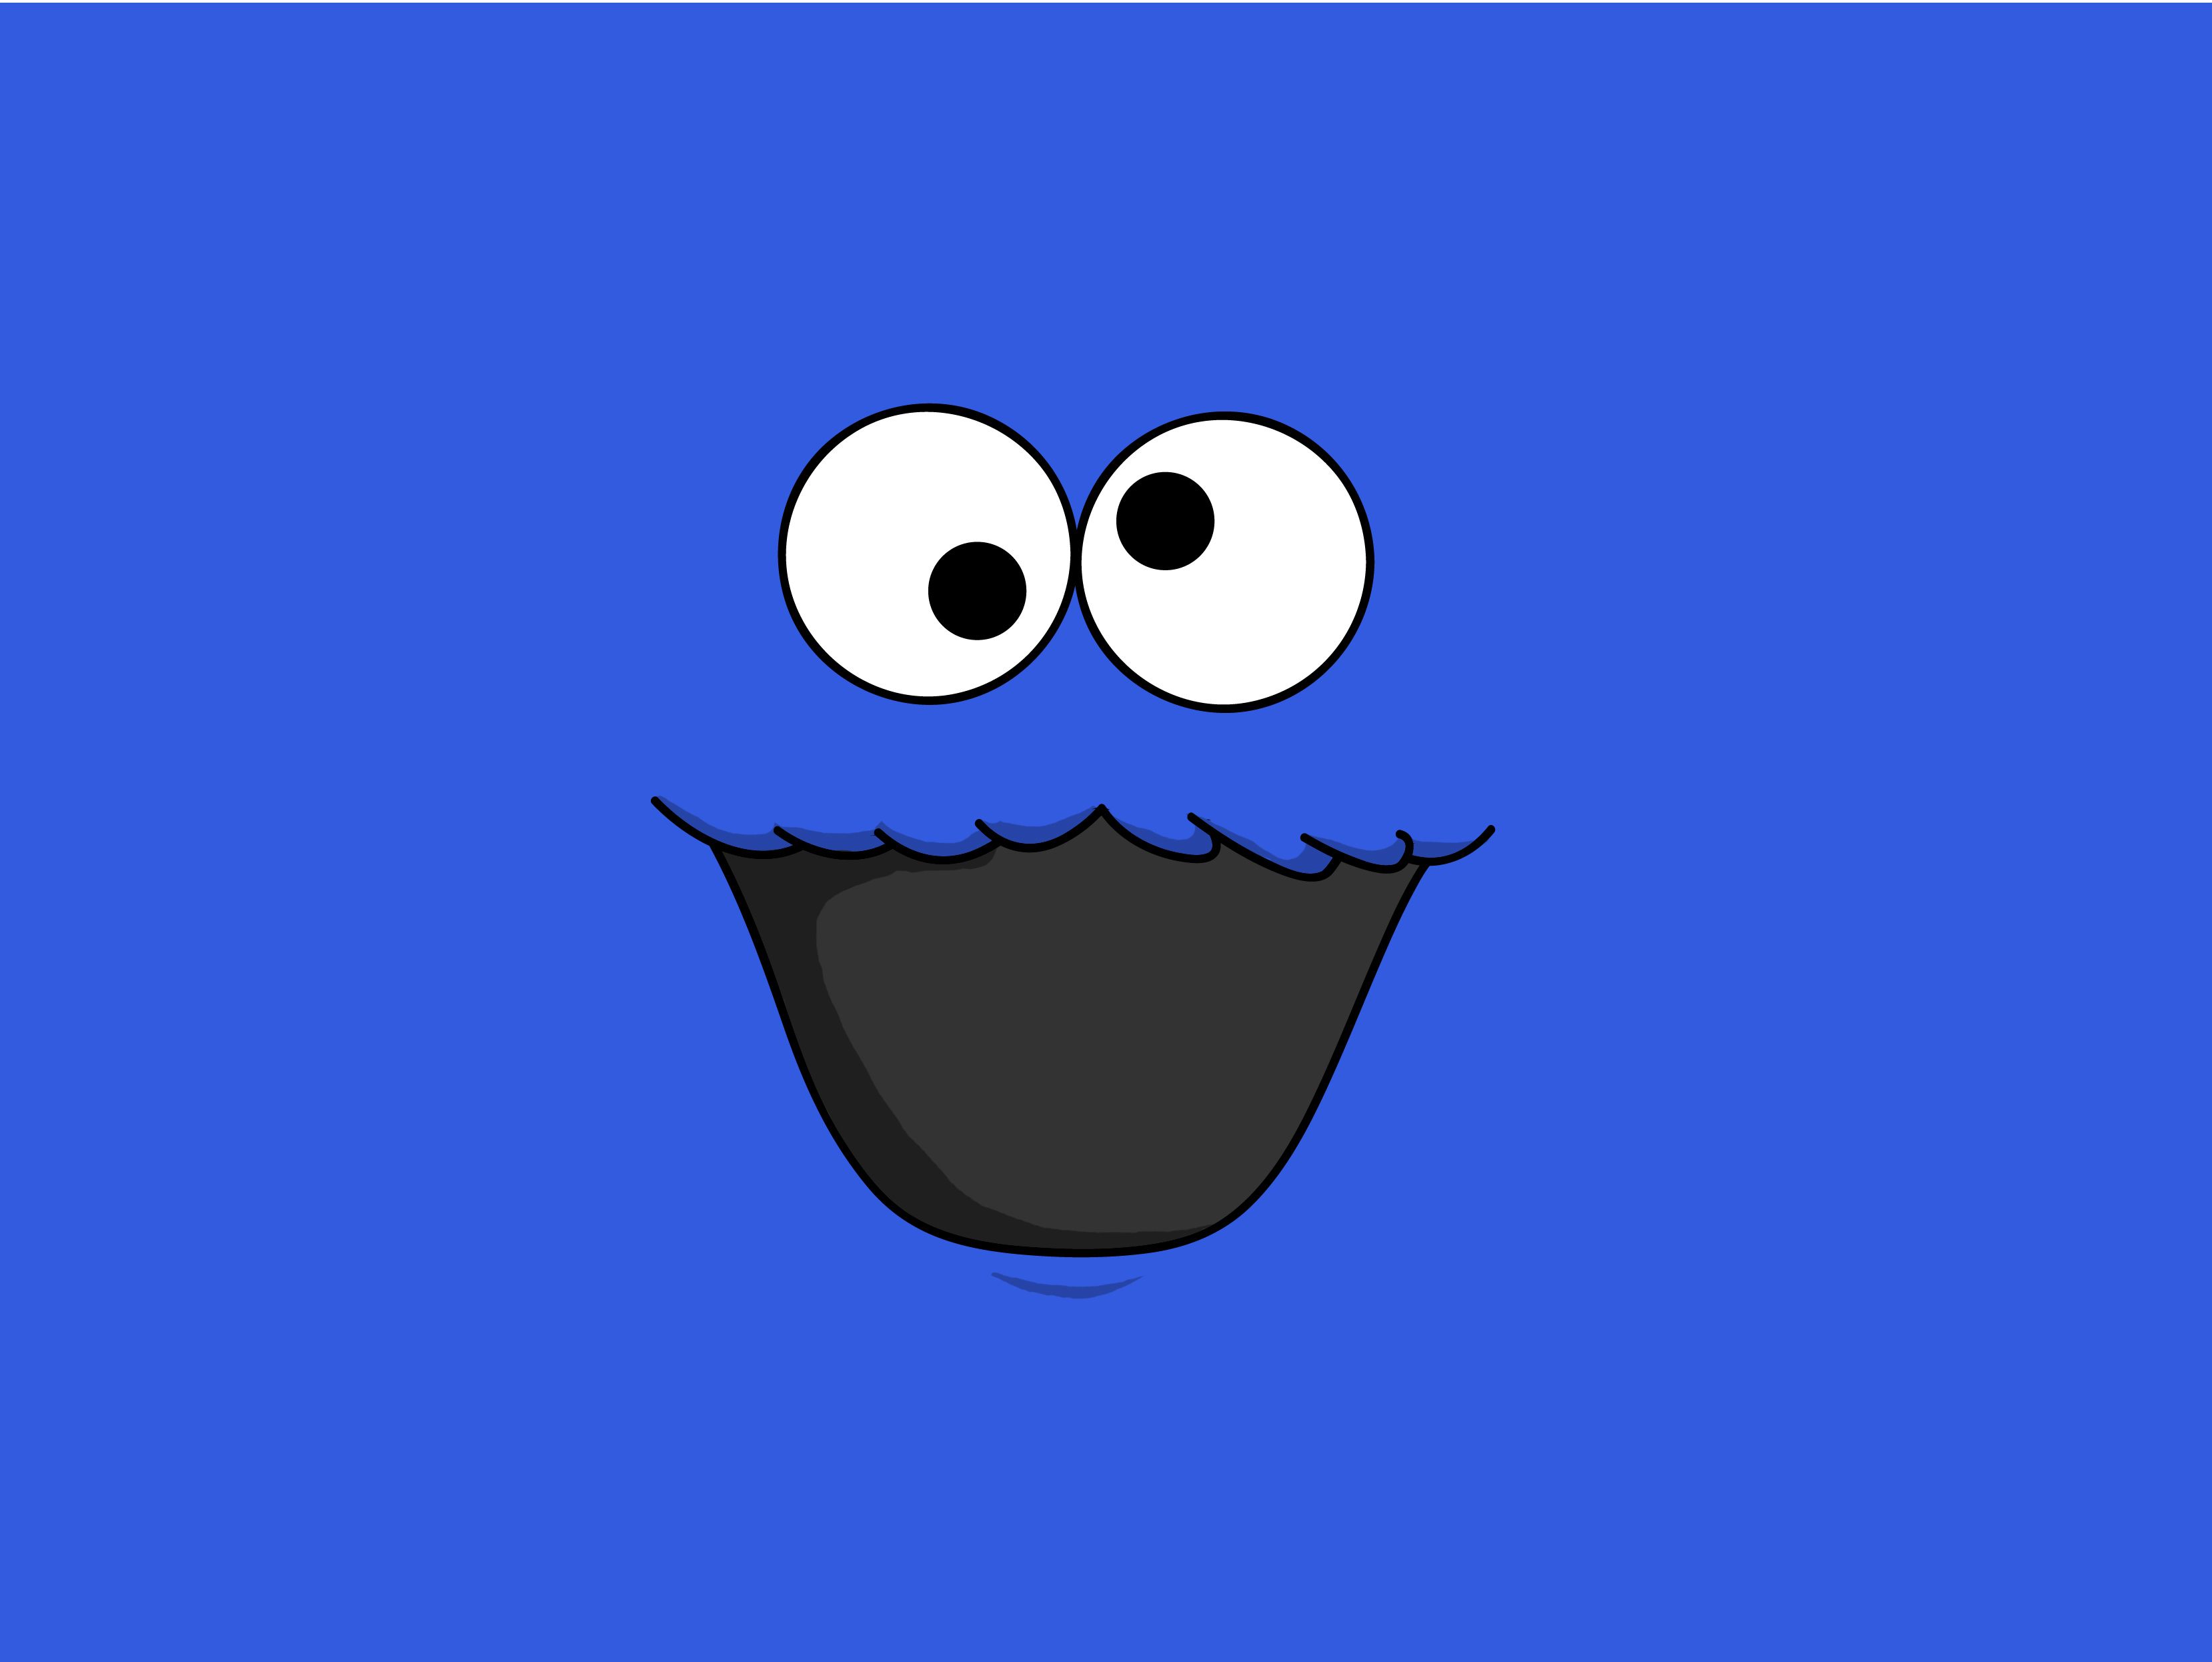 cookie monster wallpaper hd,bleu,dessin animé,sourire,œil,police de caractère